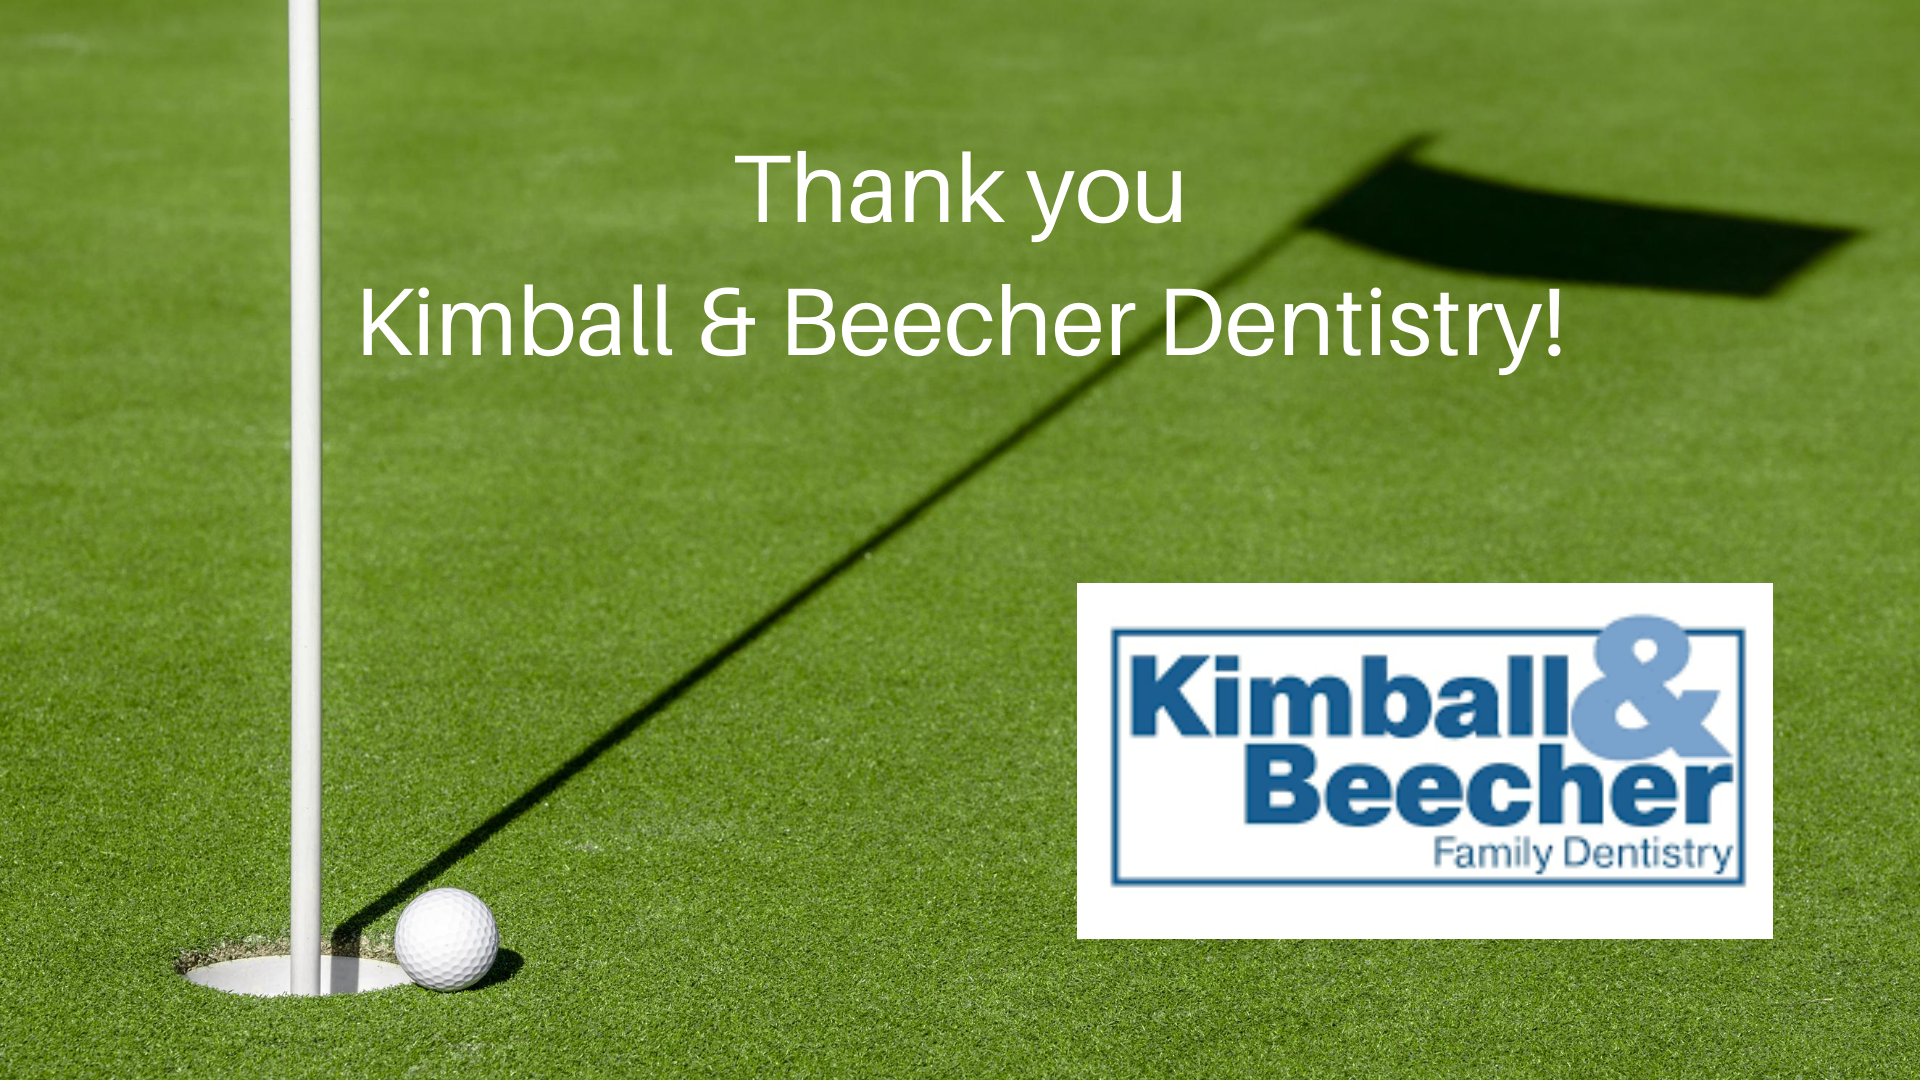 Kimball & Beecher Dentistry